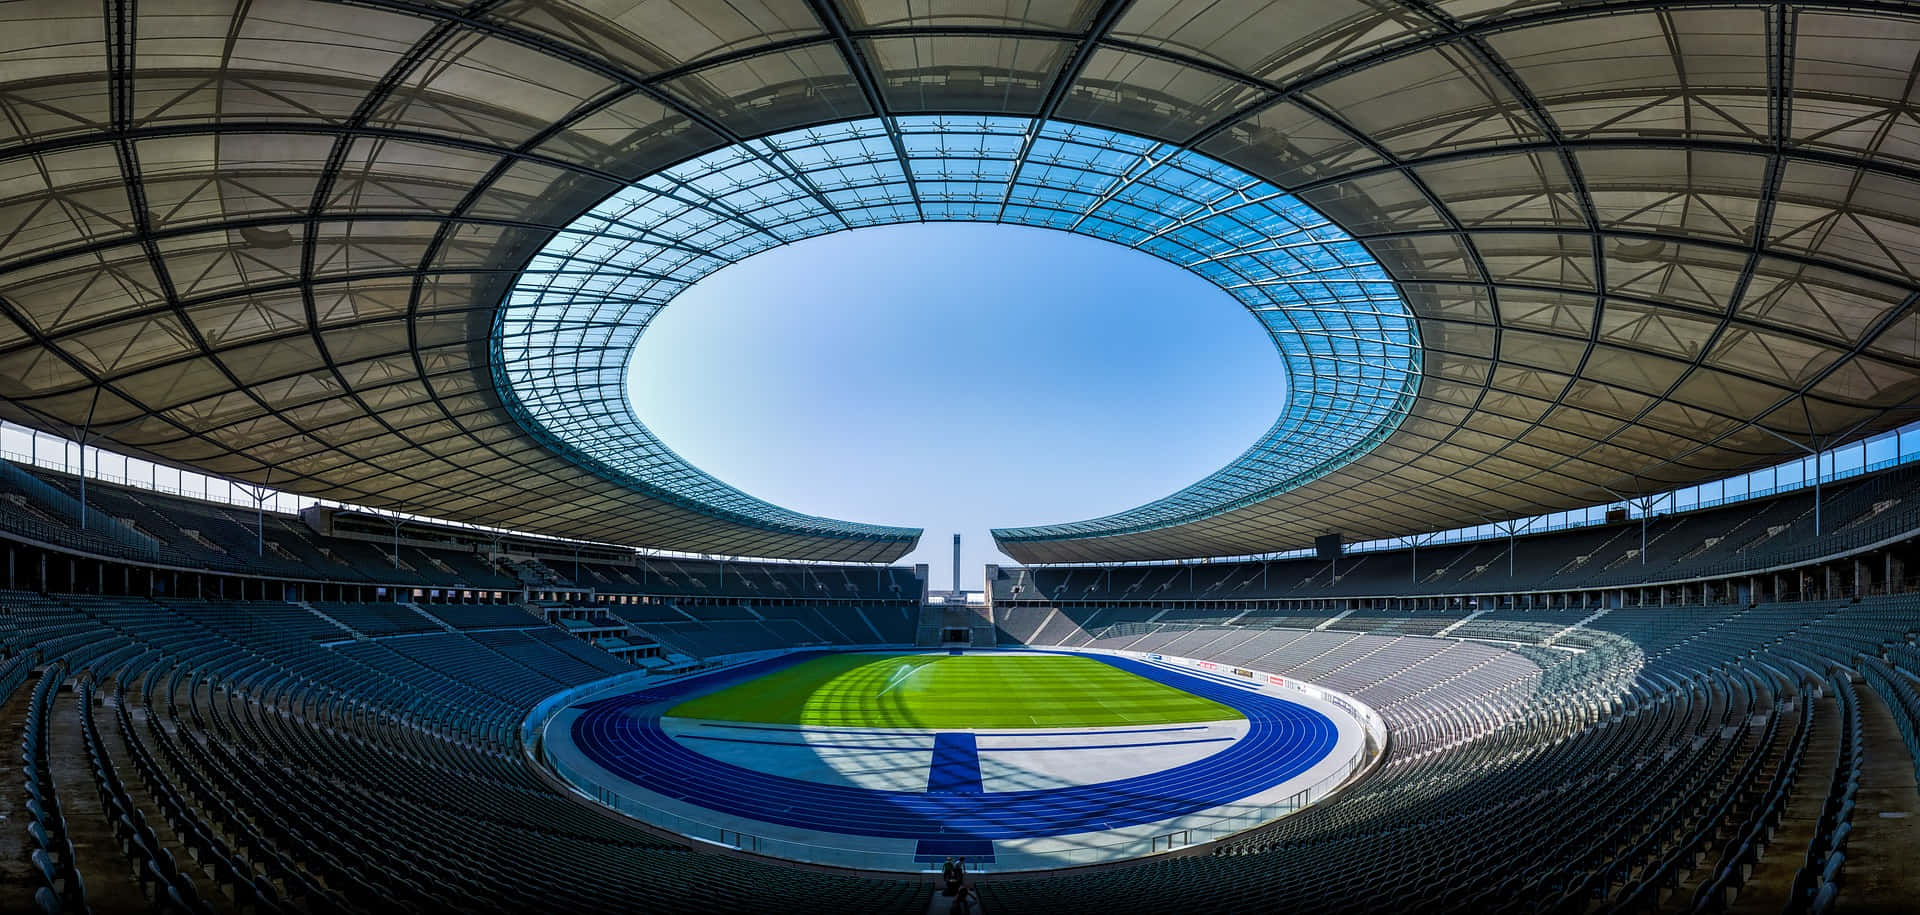 Imagempanorâmica Do Estádio Olympiastadion Berlin.